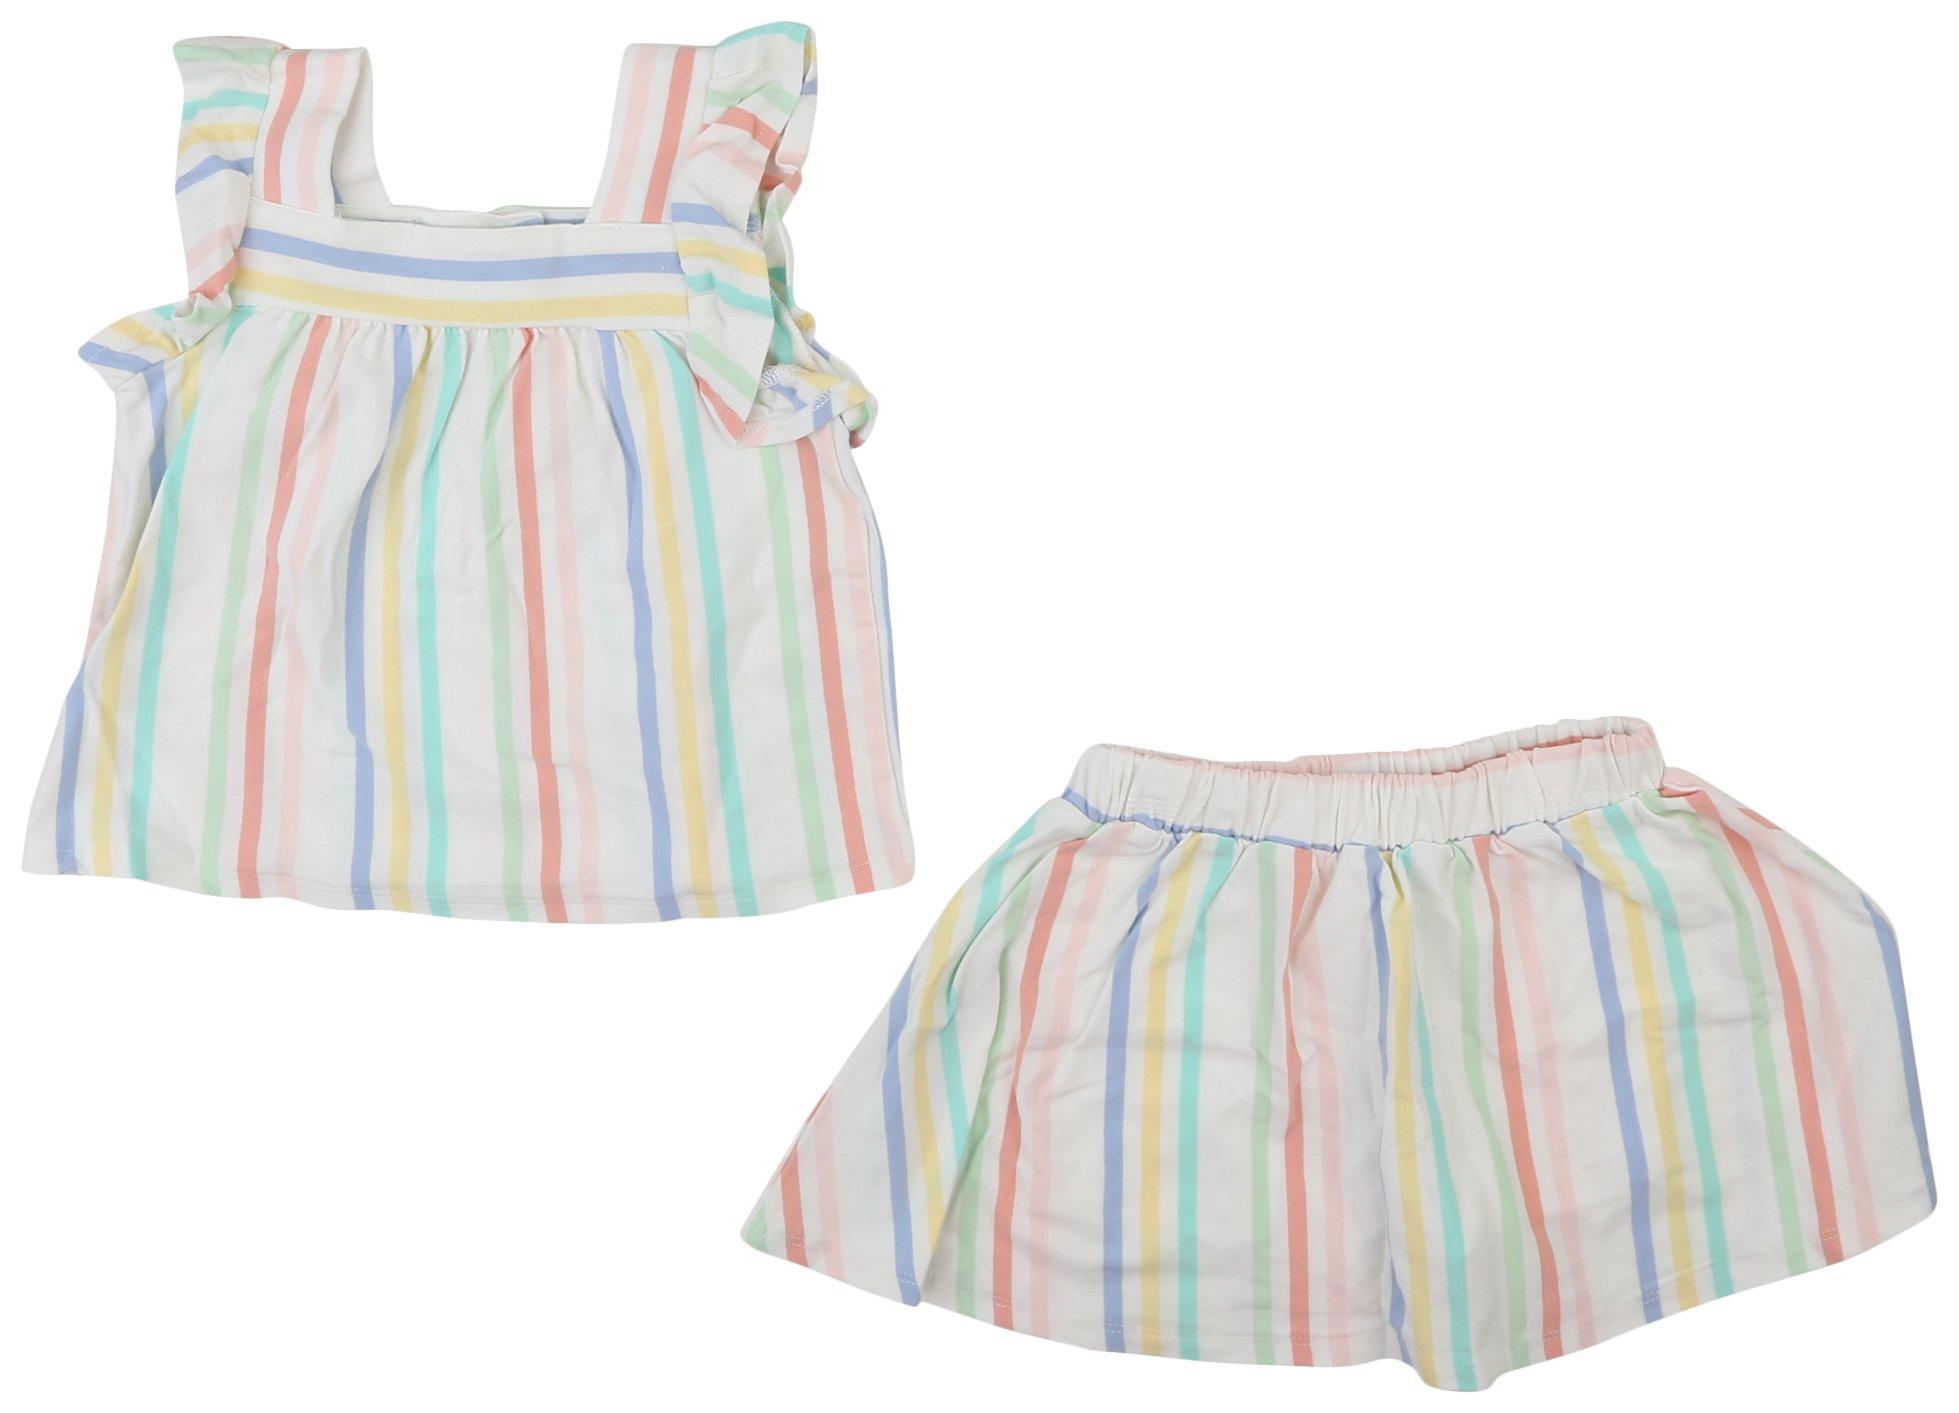 Little Me Toddler Girls 2 Pc Striped Skort Set